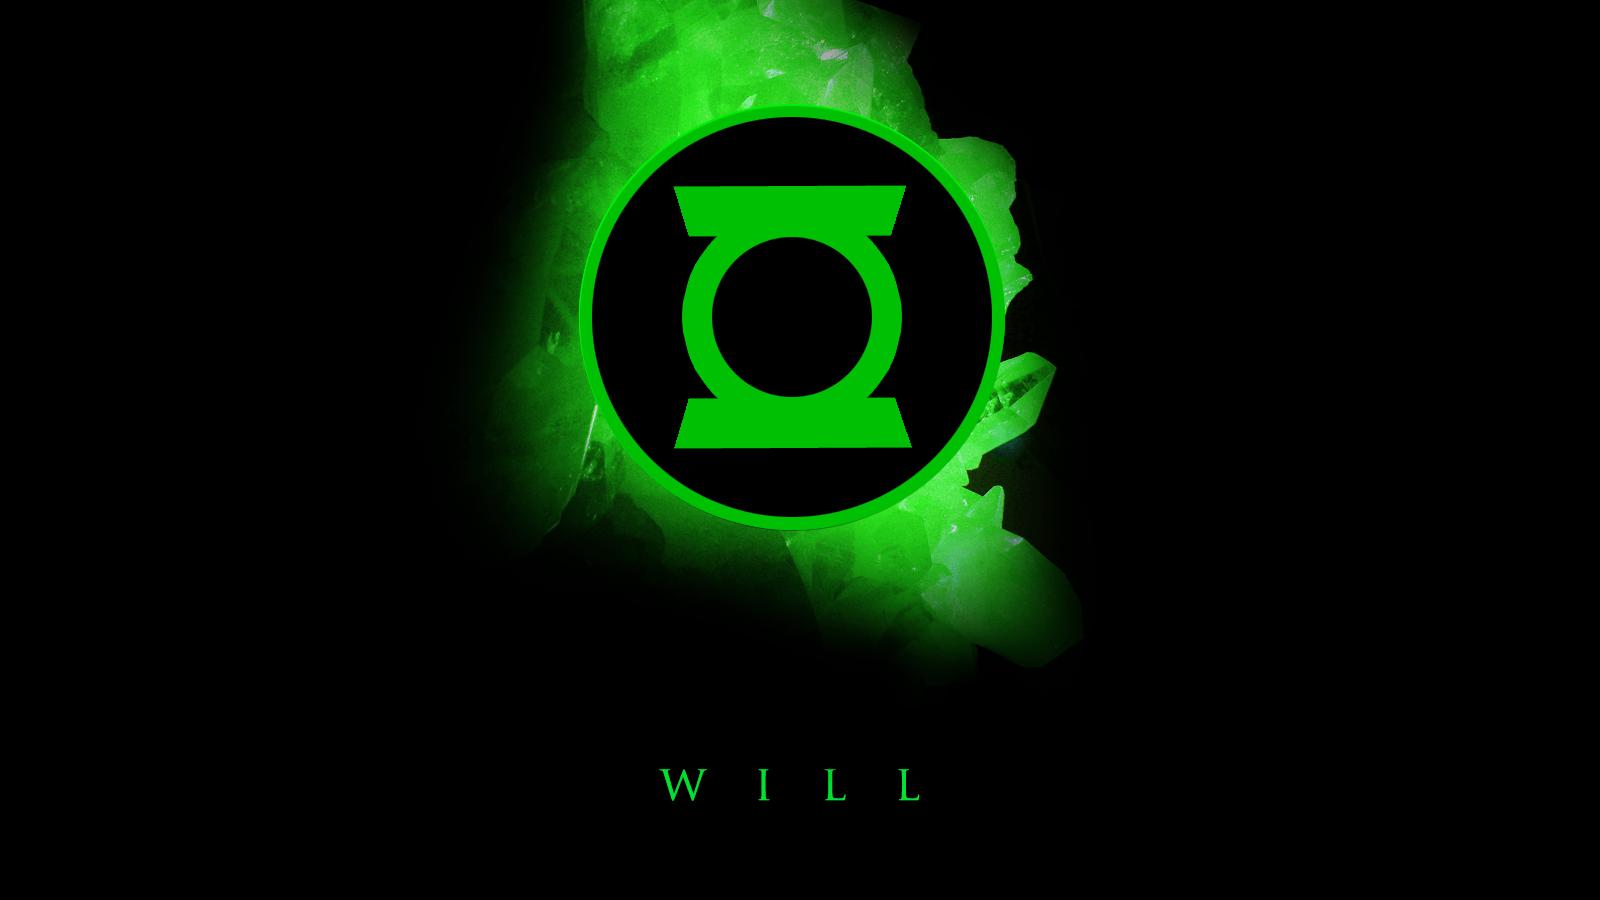 197 Green Lantern Wallpapers